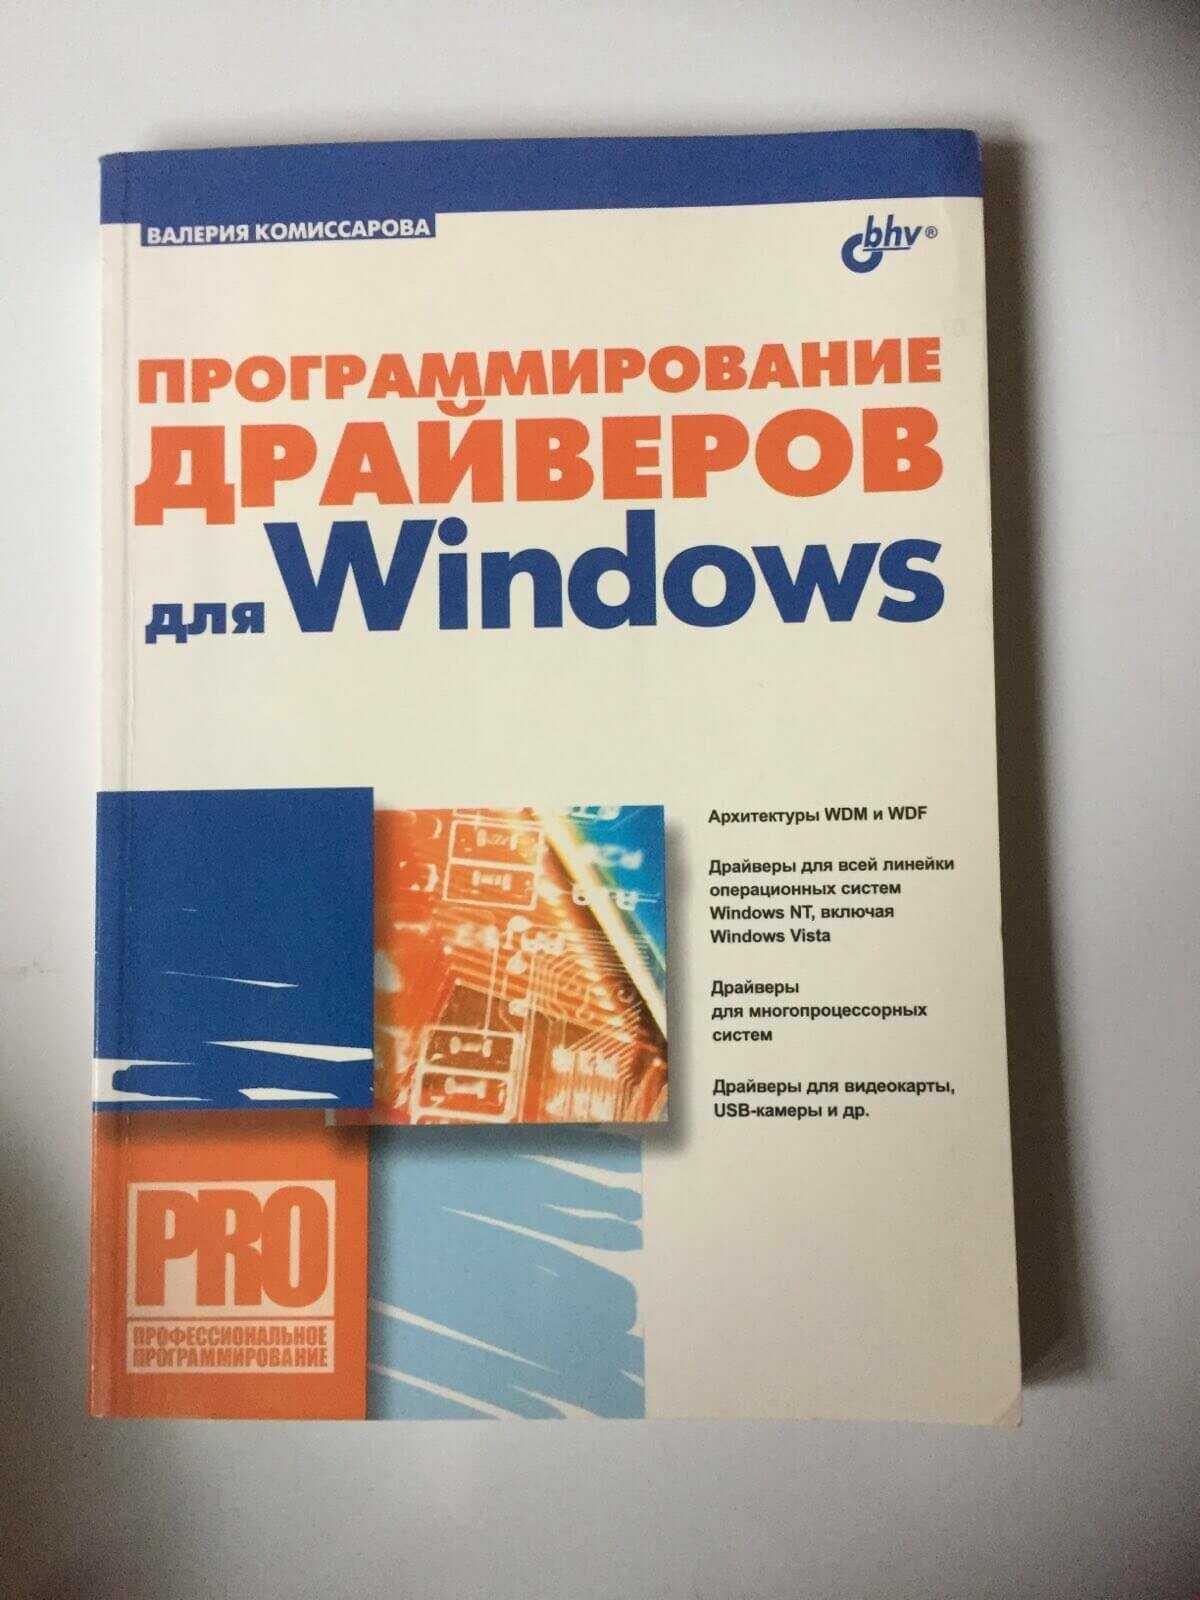 "Программирование драйверов для Windows", б/у